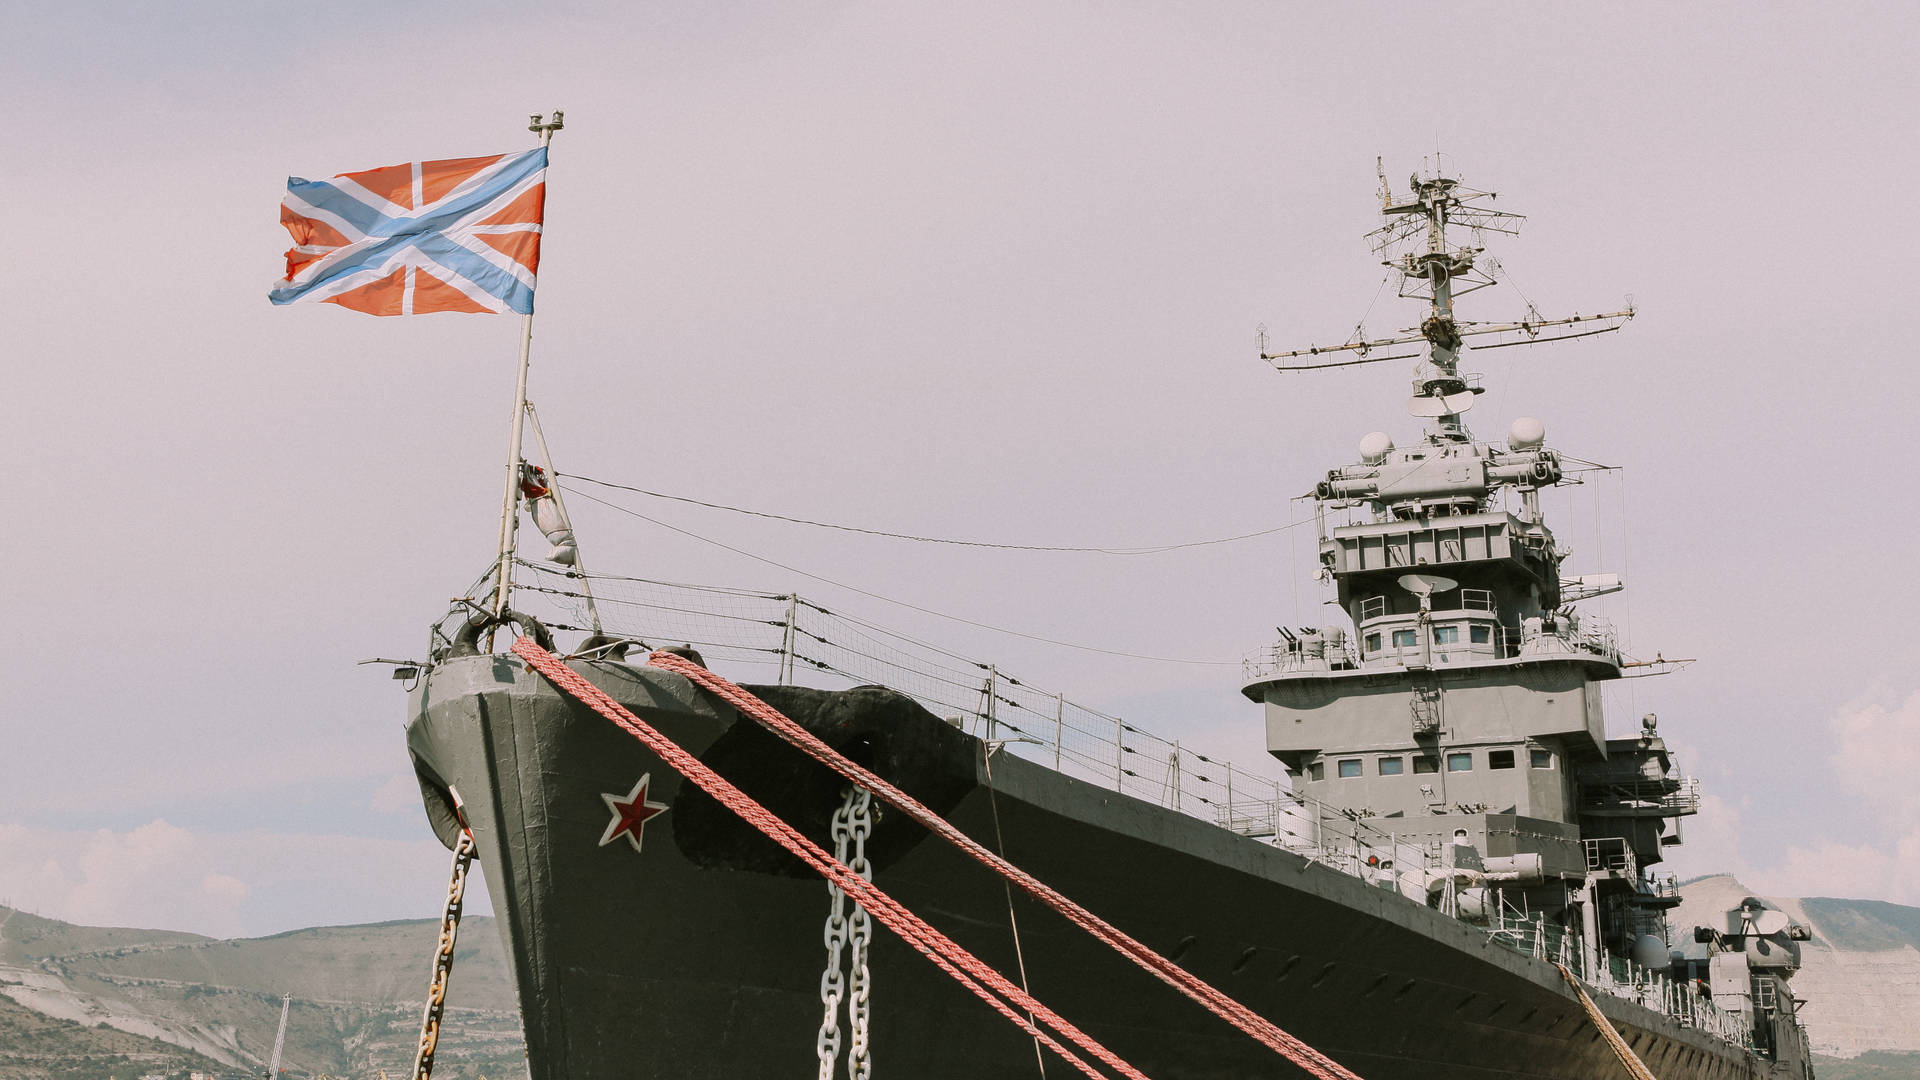 Warship With Union Jack Flag